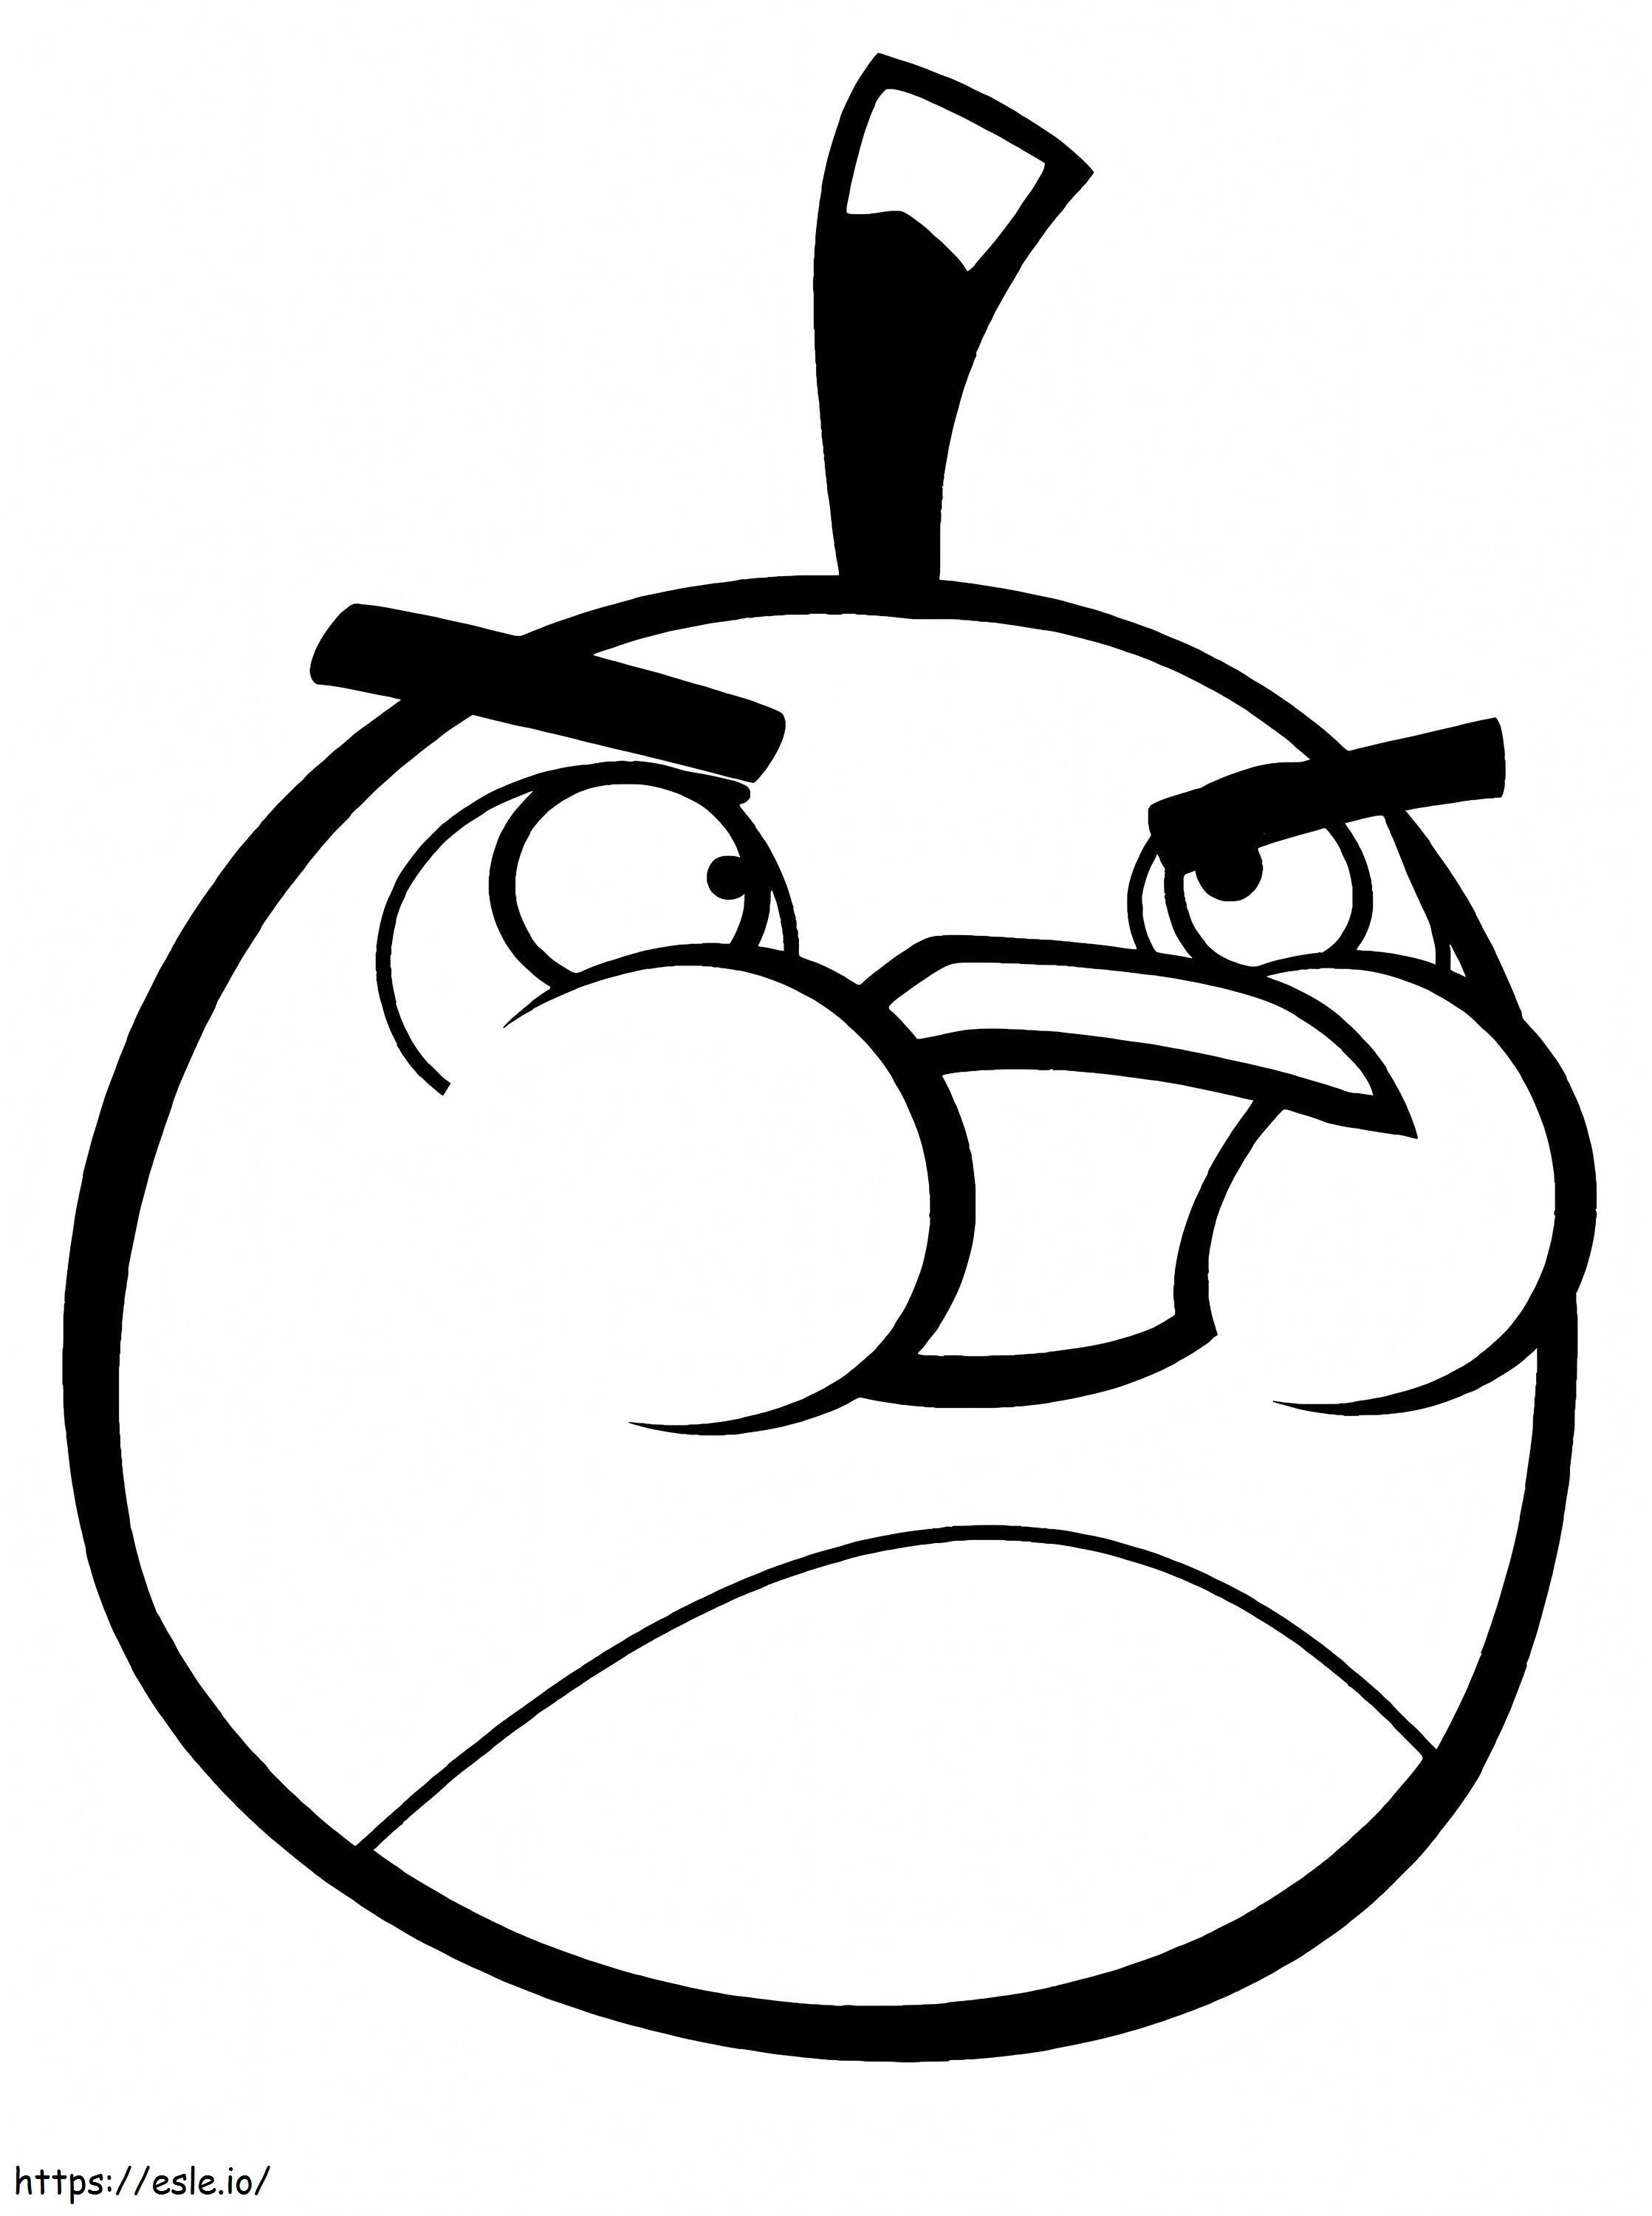 1554109371 Pelin väritys Angry Bird Save Bomb The Black Bird Of Game Coloring Angry Bird värityskuva